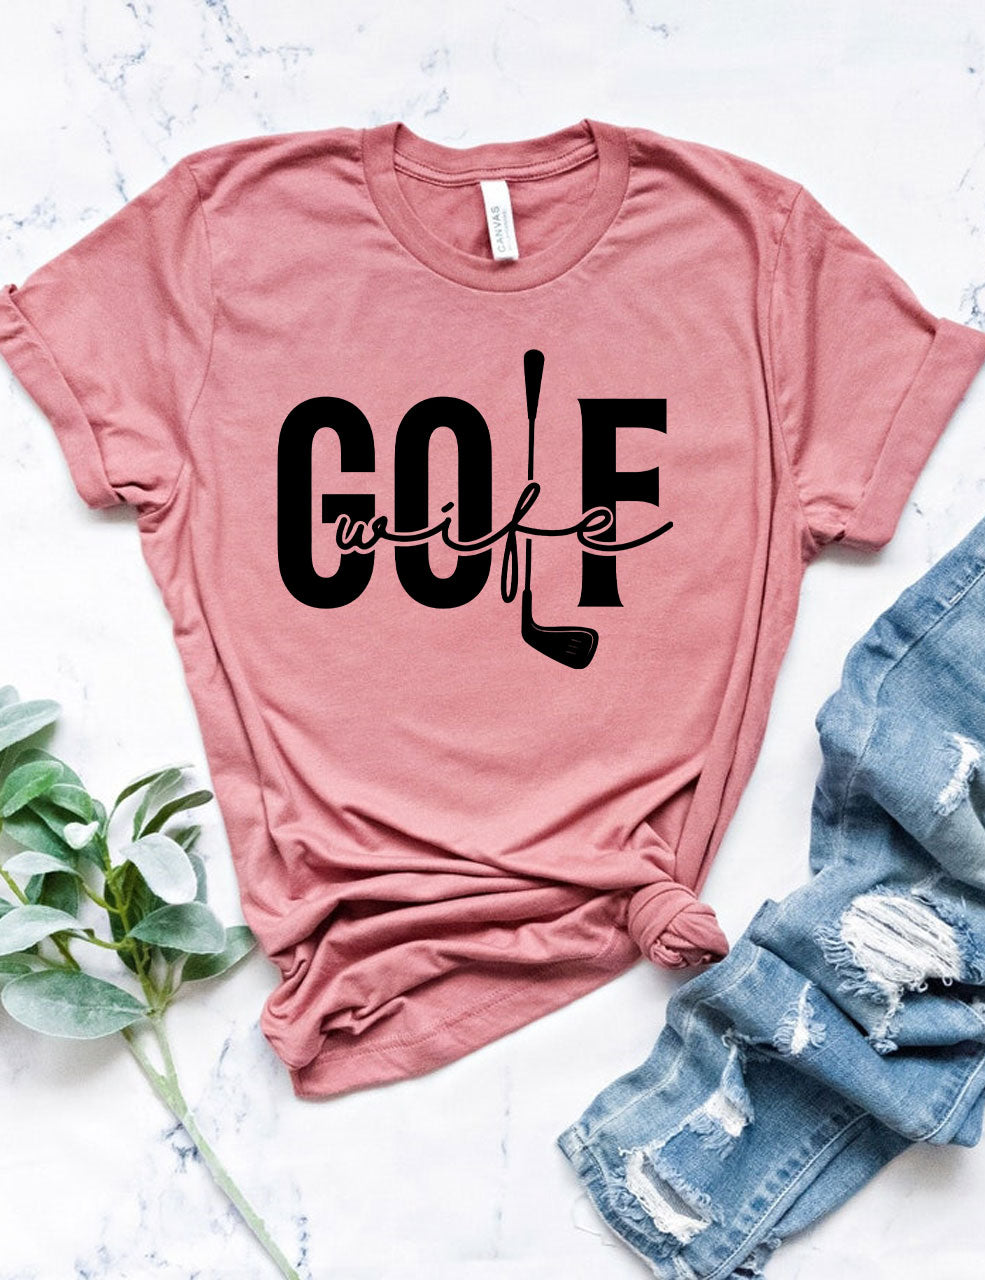 Golf Wife T-shirt